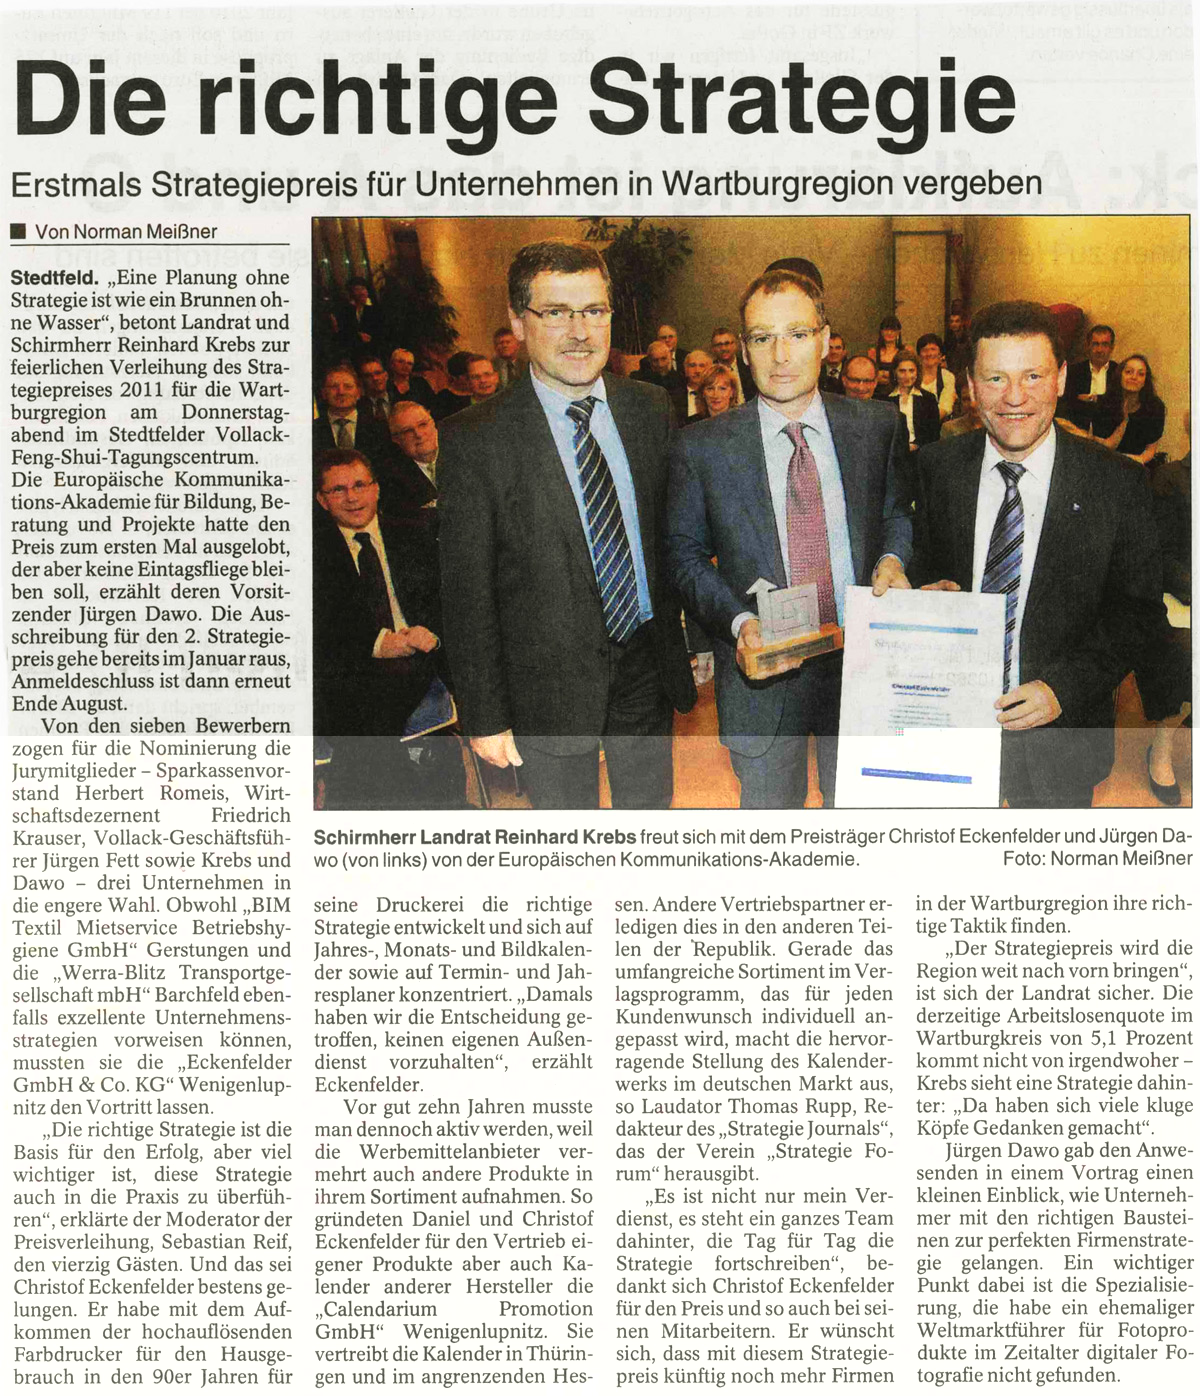 Strategiepreis 2012 der Wartburgregion